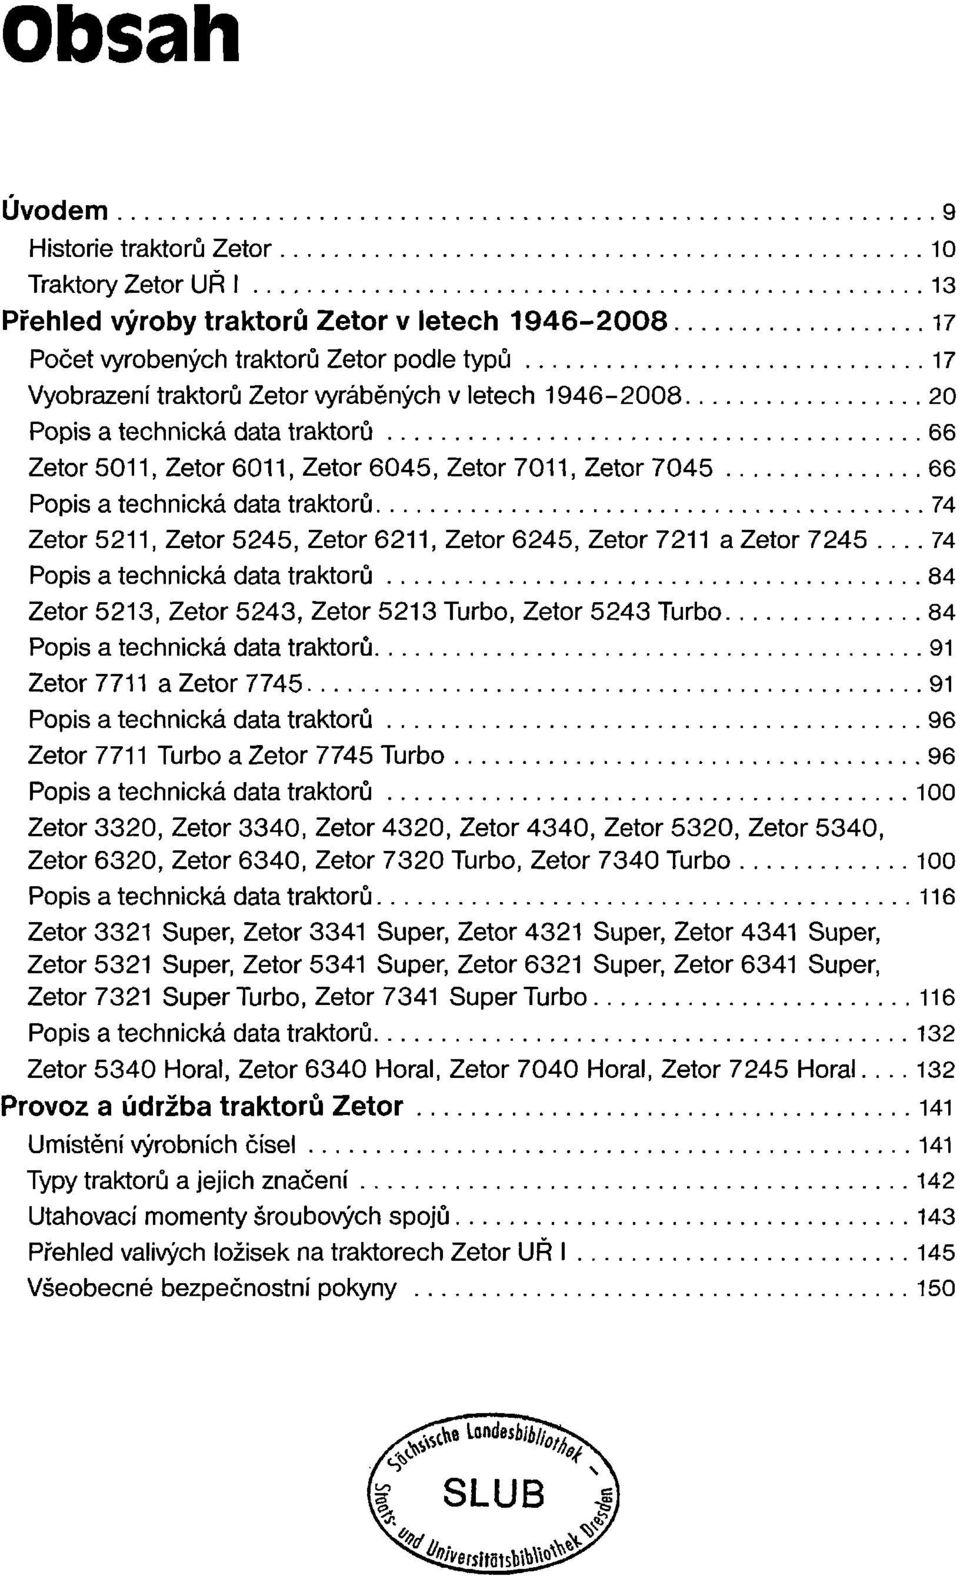 6245, Zetor 7211 a Zetor 7245 74 Popis a technická data traktorů 84 Zetor 5213, Zetor 5243, Zetor 5213 Turbo, Zetor 5243 Turbo 84 Popis a technická data traktorů 91 Zetor 7711 a Zetor 7745 91 Popis a